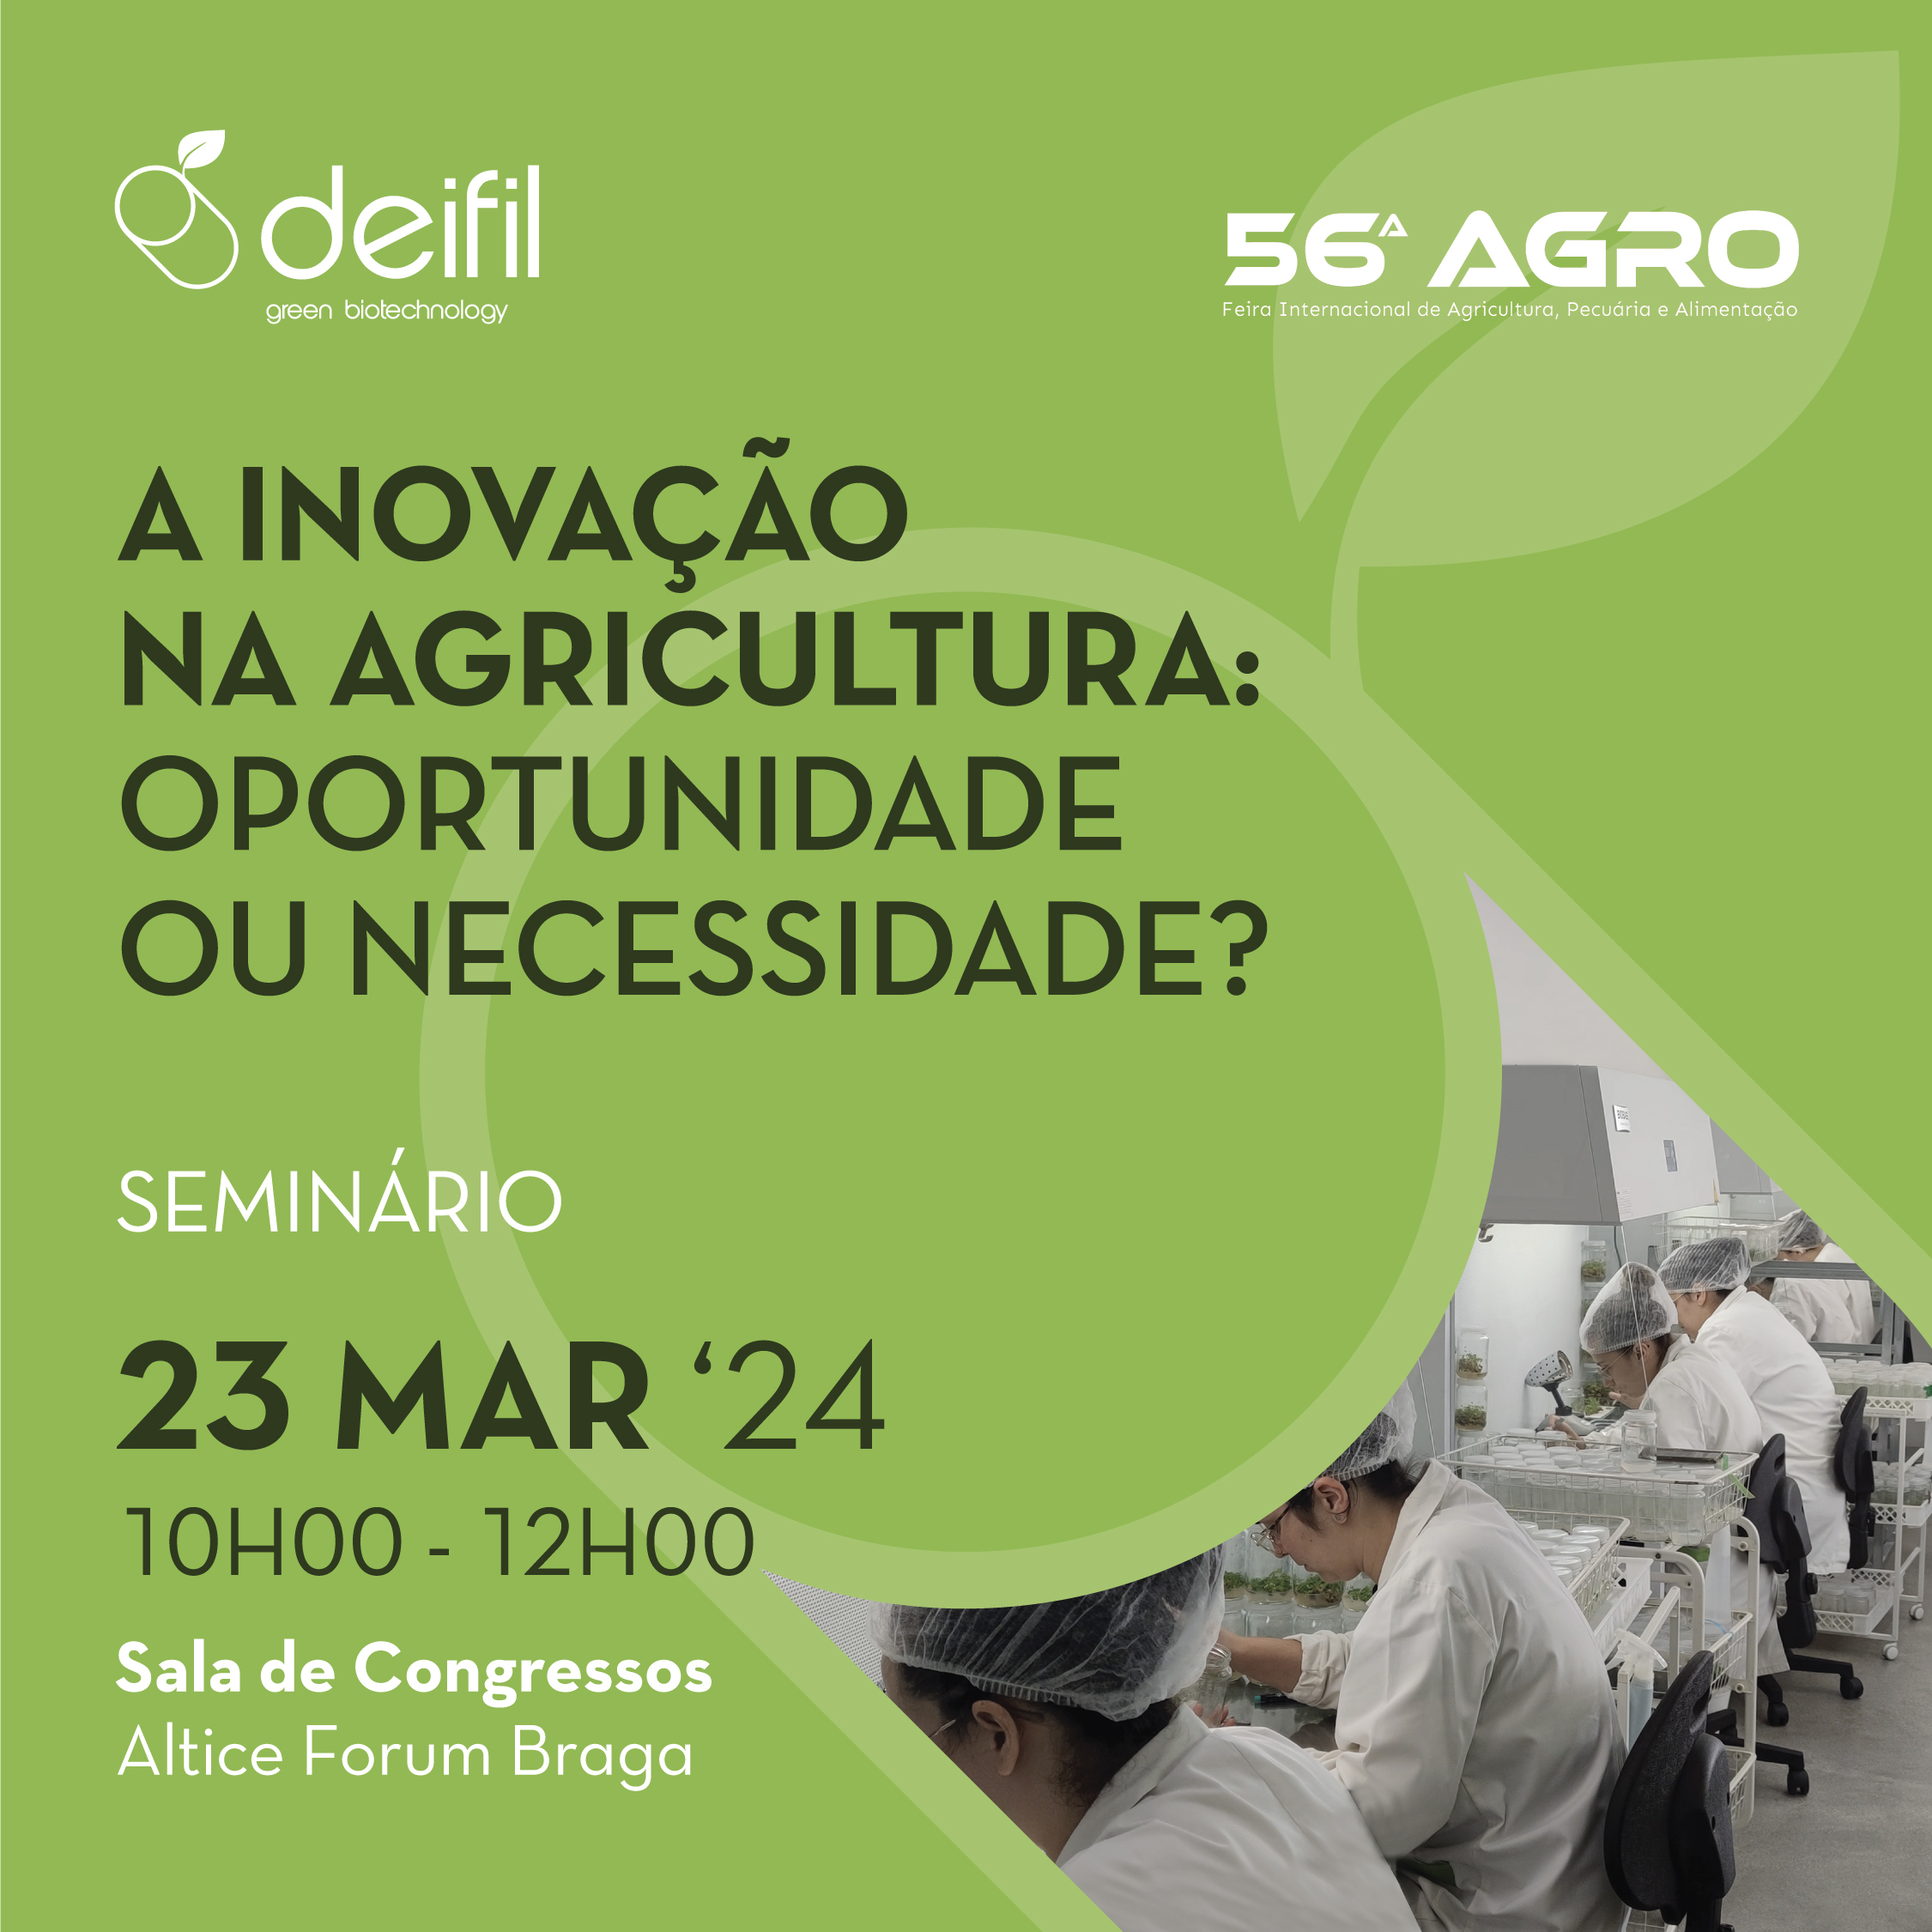 Seminário, “A Inovação na Agricultura: Oportunidade ou Necessidade?”